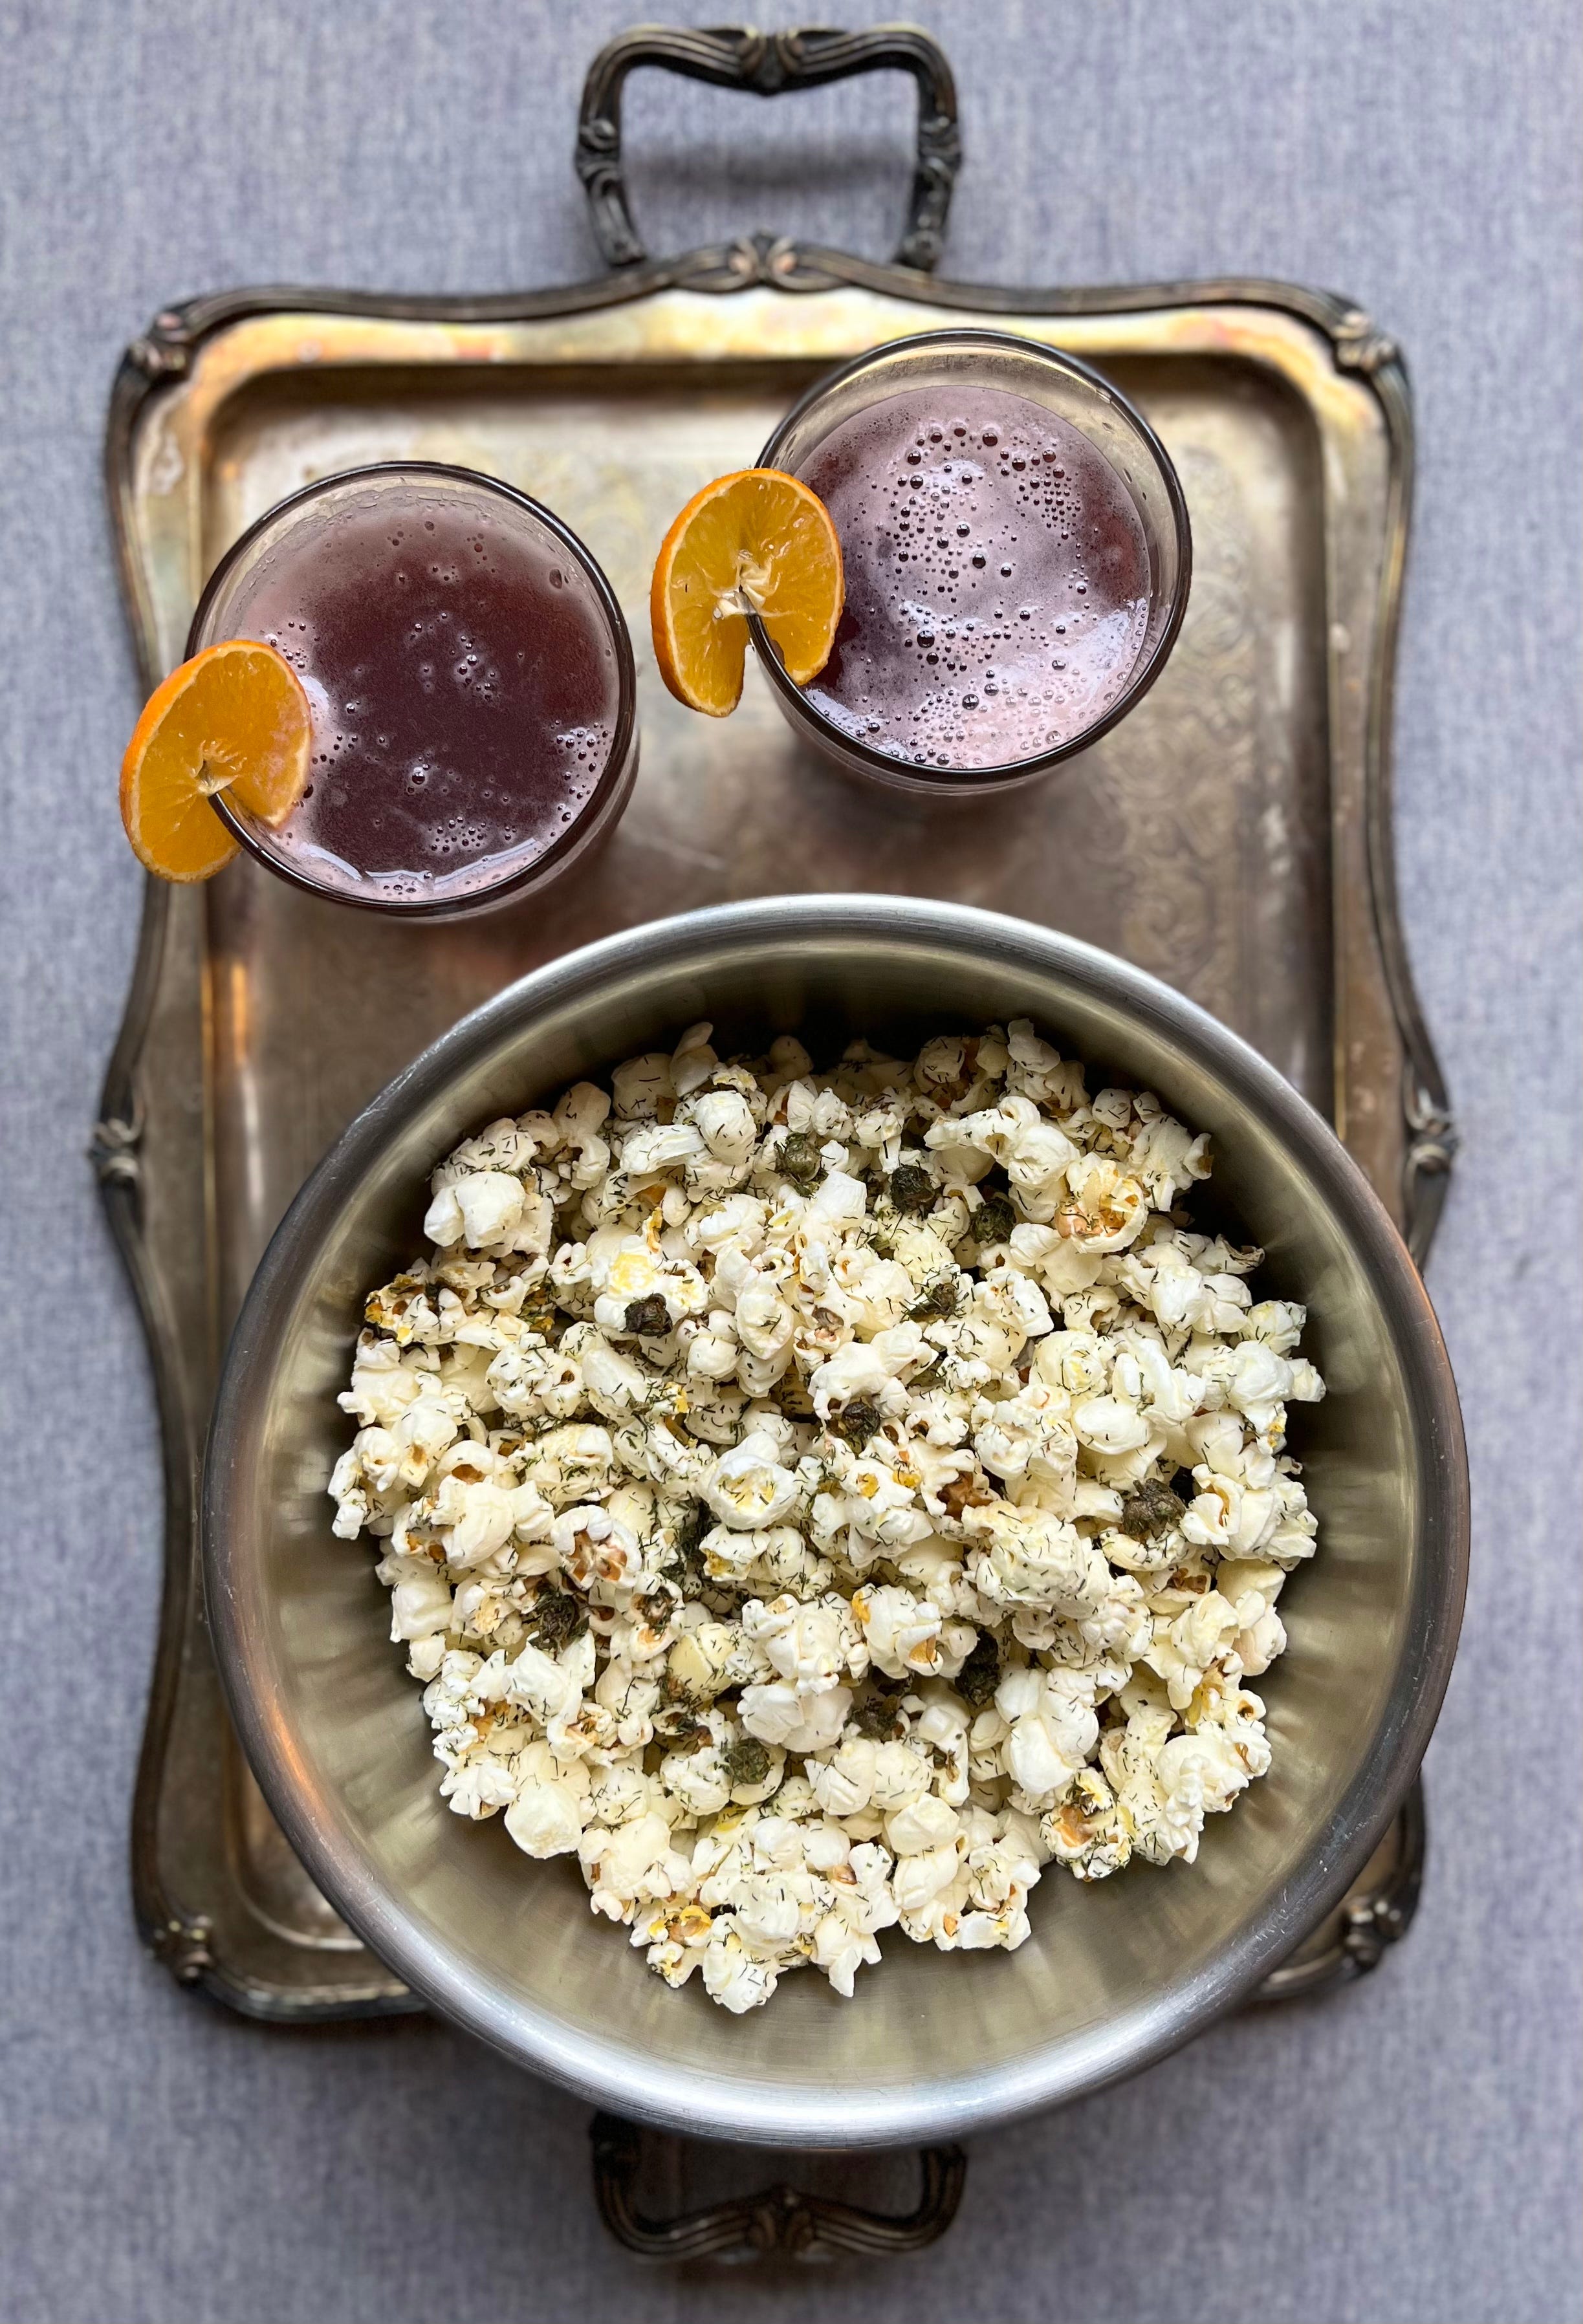 How to Make Stove-Top Popcorn? - Food Pleasure and Health